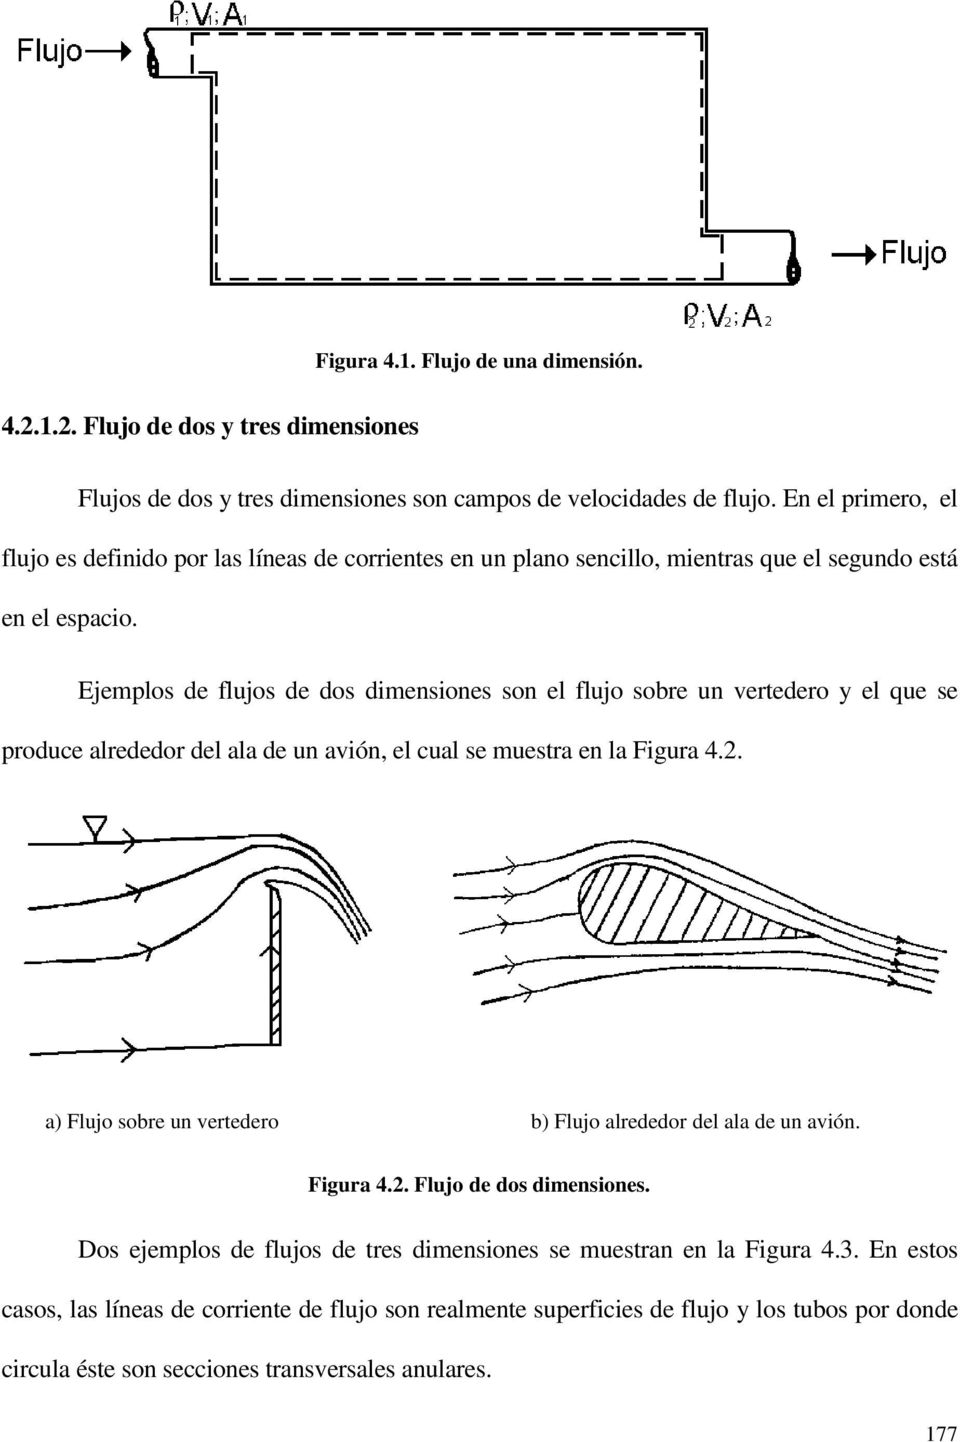 Ejemplos de flujos de dos dimensiones son el flujo sobre un vertedero y el que se produce alrededor del ala de un avión, el cual se muestra en la Figura 4.2.